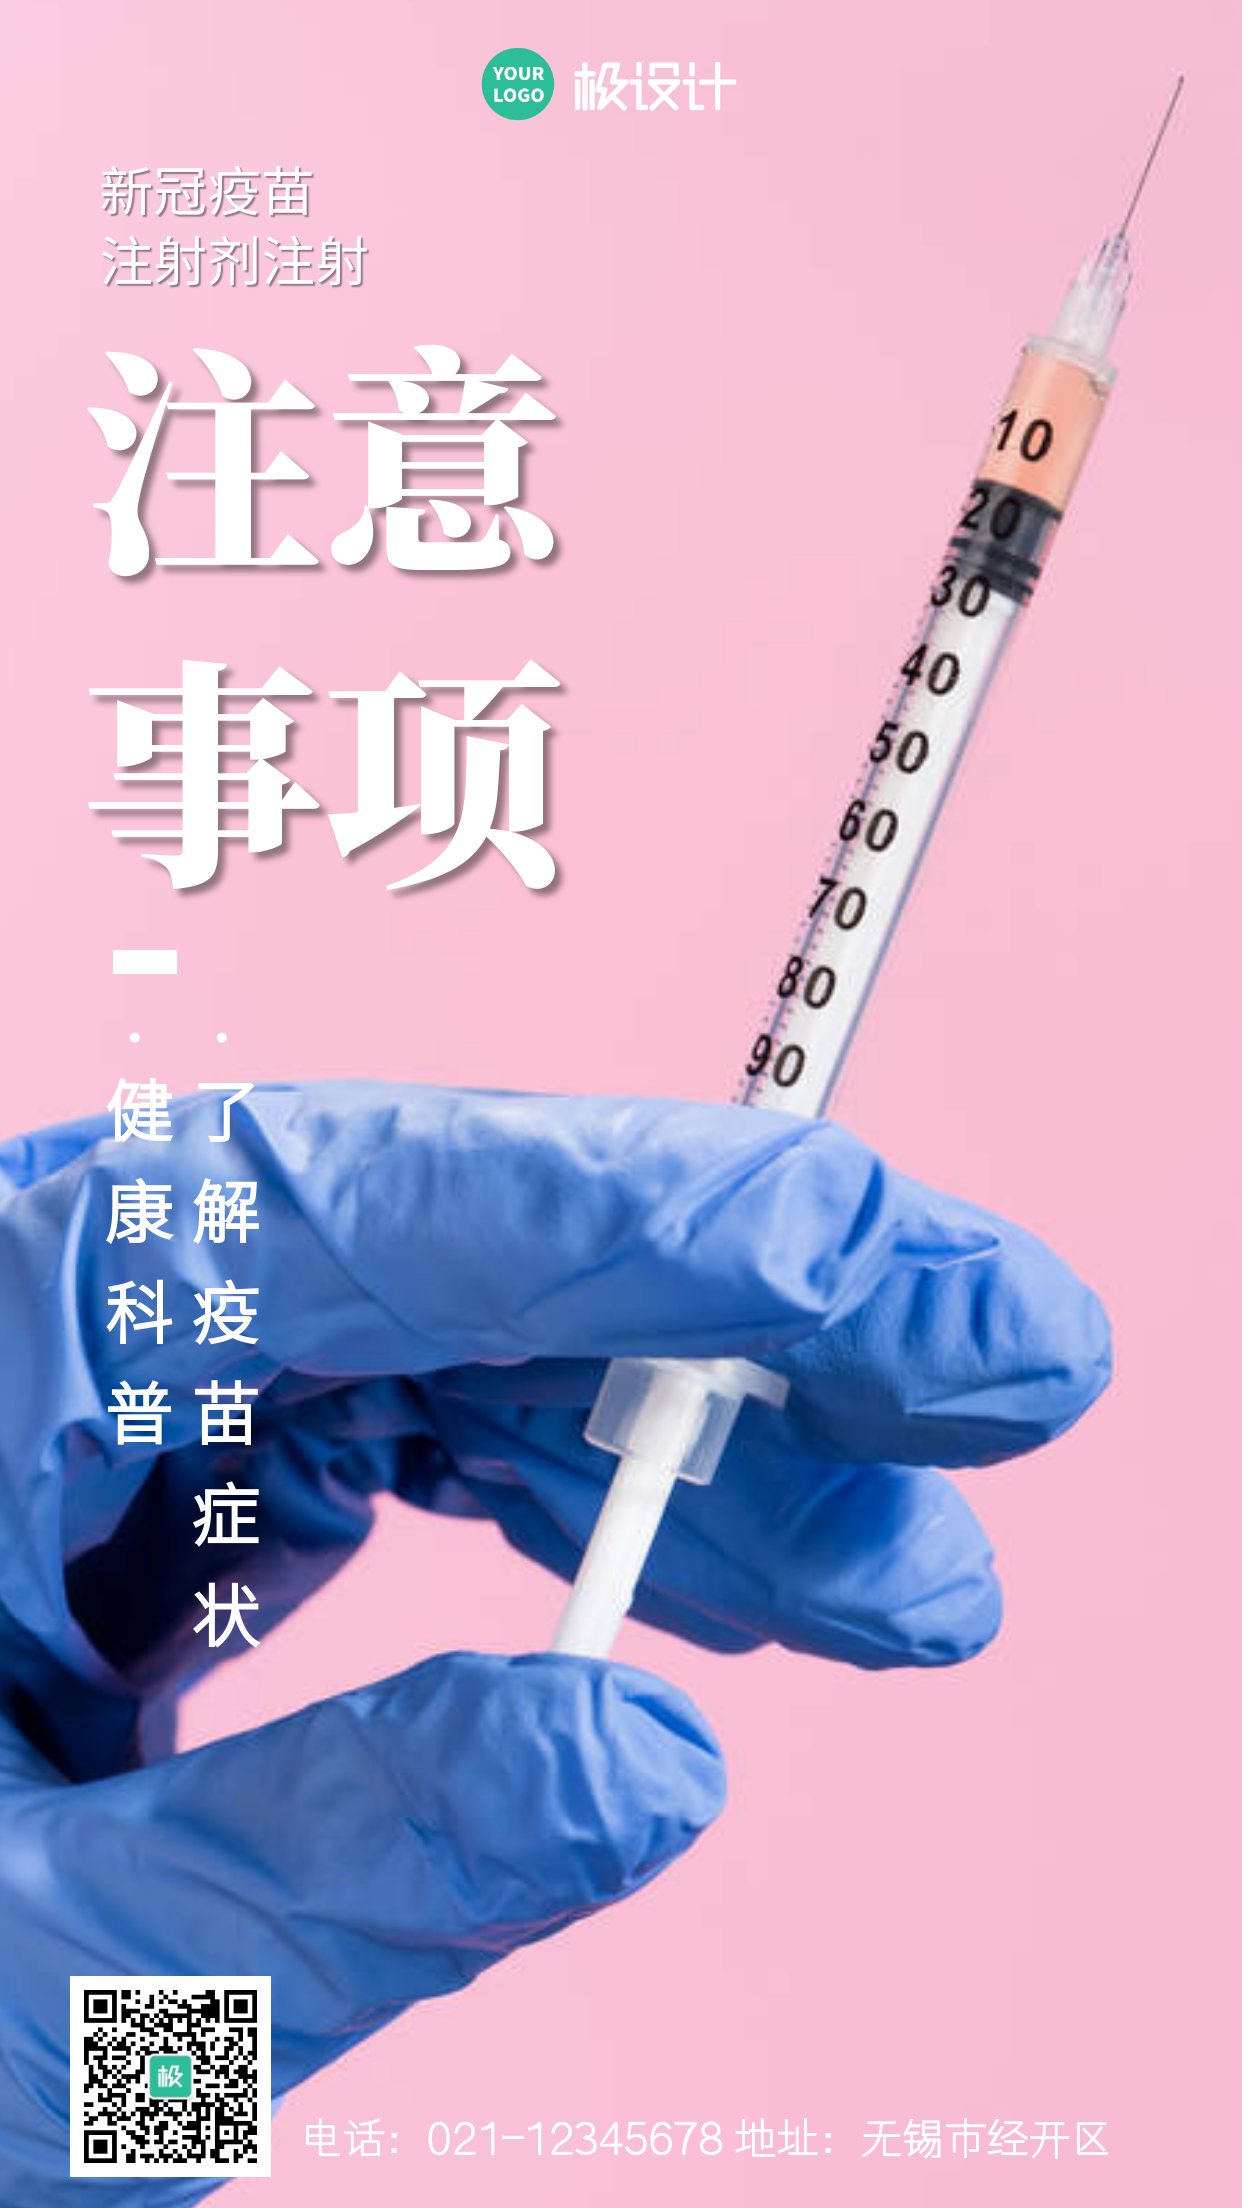 简约风格新冠疫苗注射禁忌提醒宣传手机海报